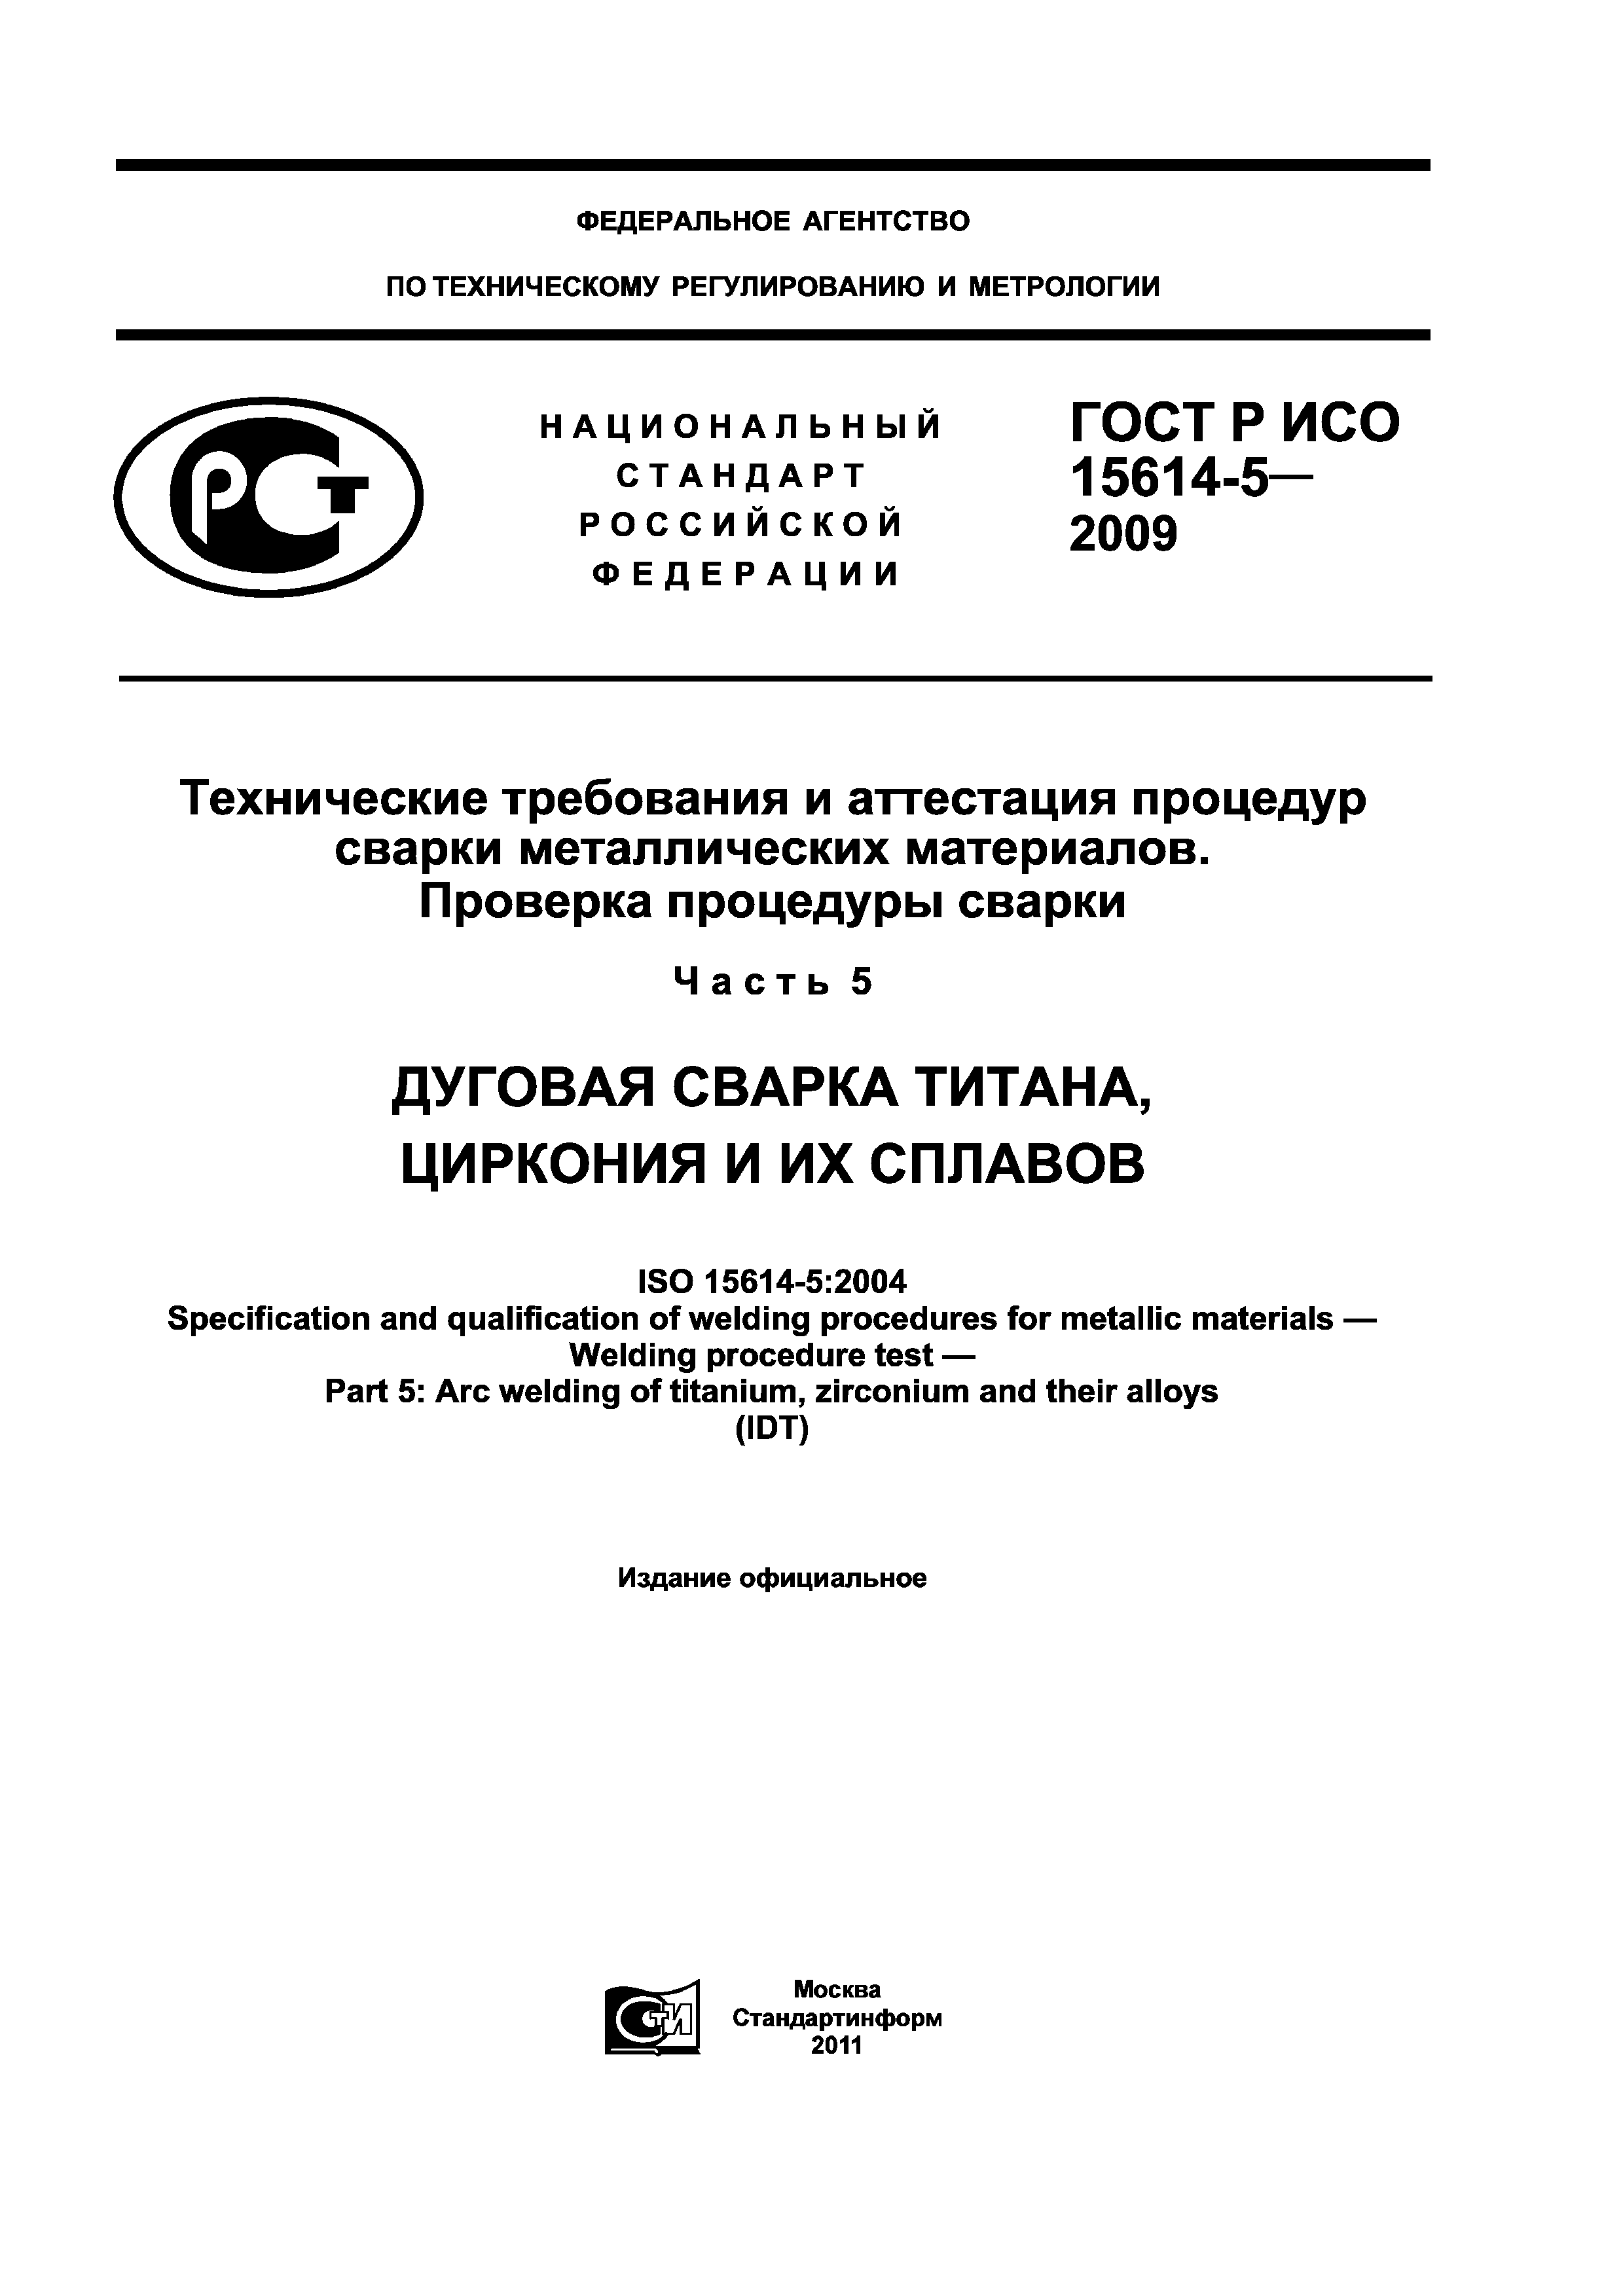 ГОСТ Р ИСО 15614-5-2009